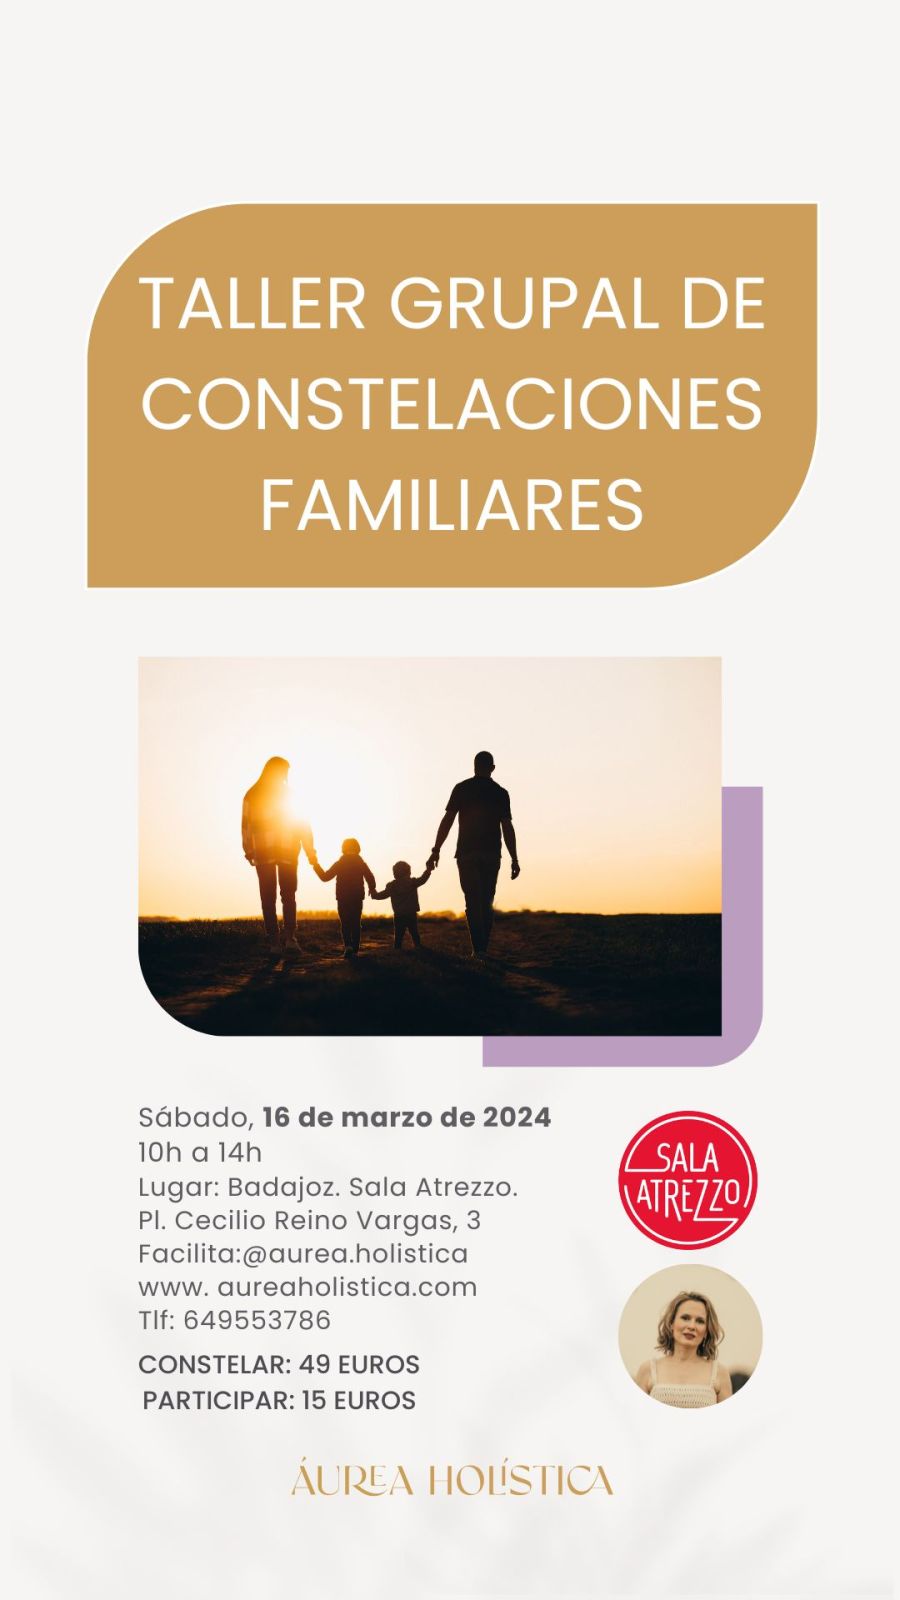 TALLER DE CONSTELACIONES FAMILIARES EN BADAJOZ | 16 DE MARZO DE 2024